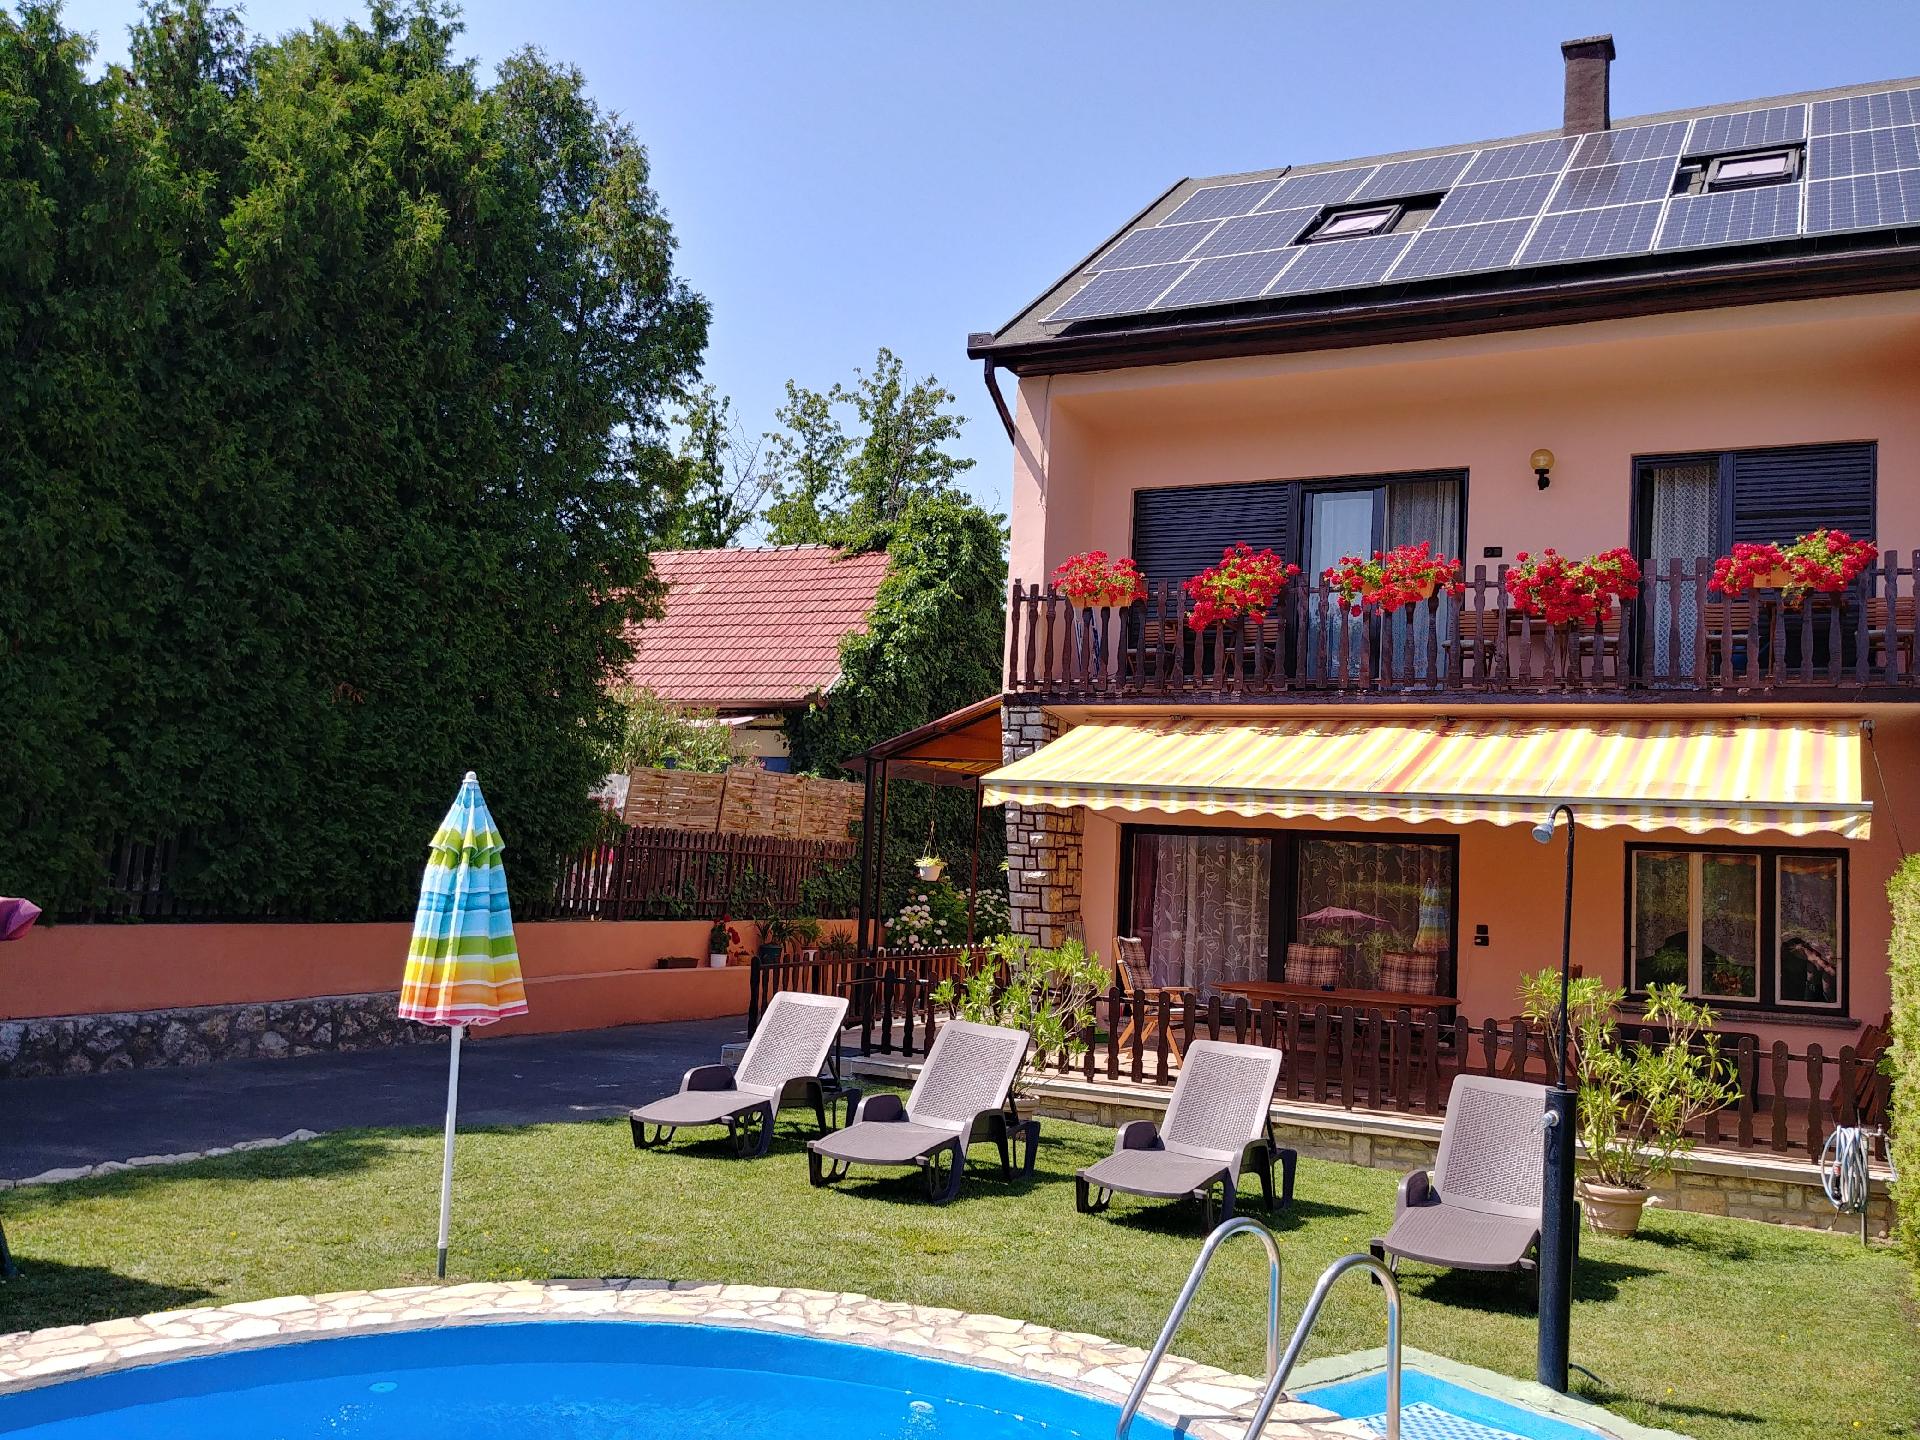 Ferienwohnung für 9 Personen ca. 140 m²  Ferienwohnung in Ungarn